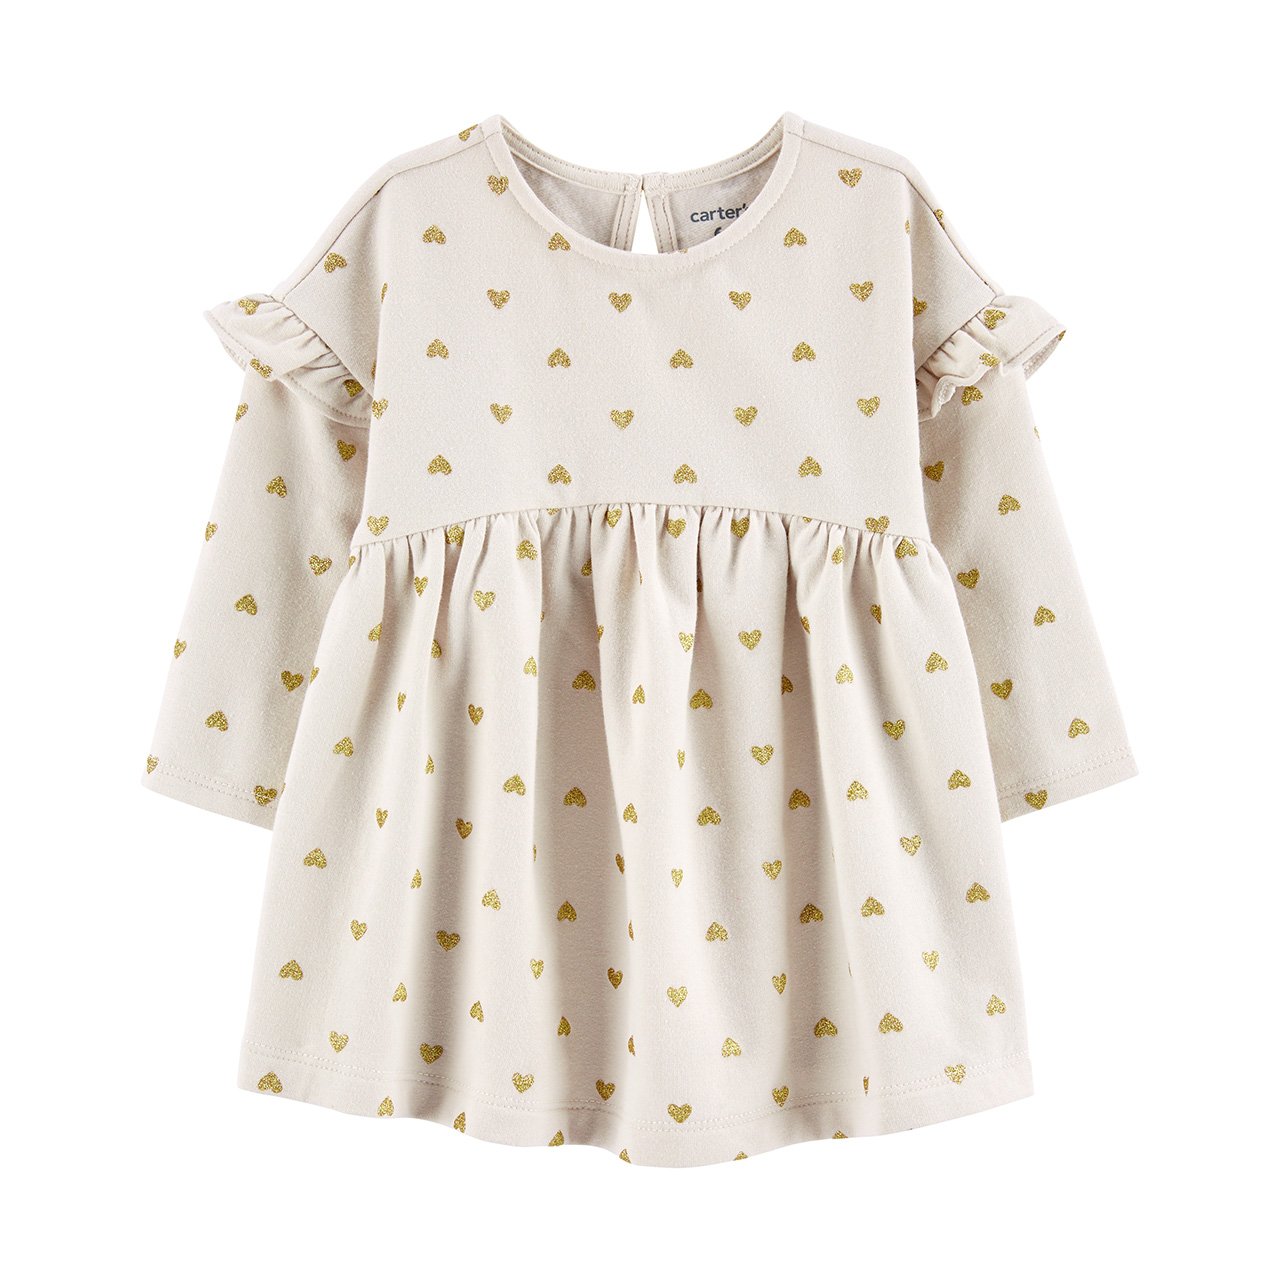 Un vestido blanco con estampado de corazones de puntos para bebés.